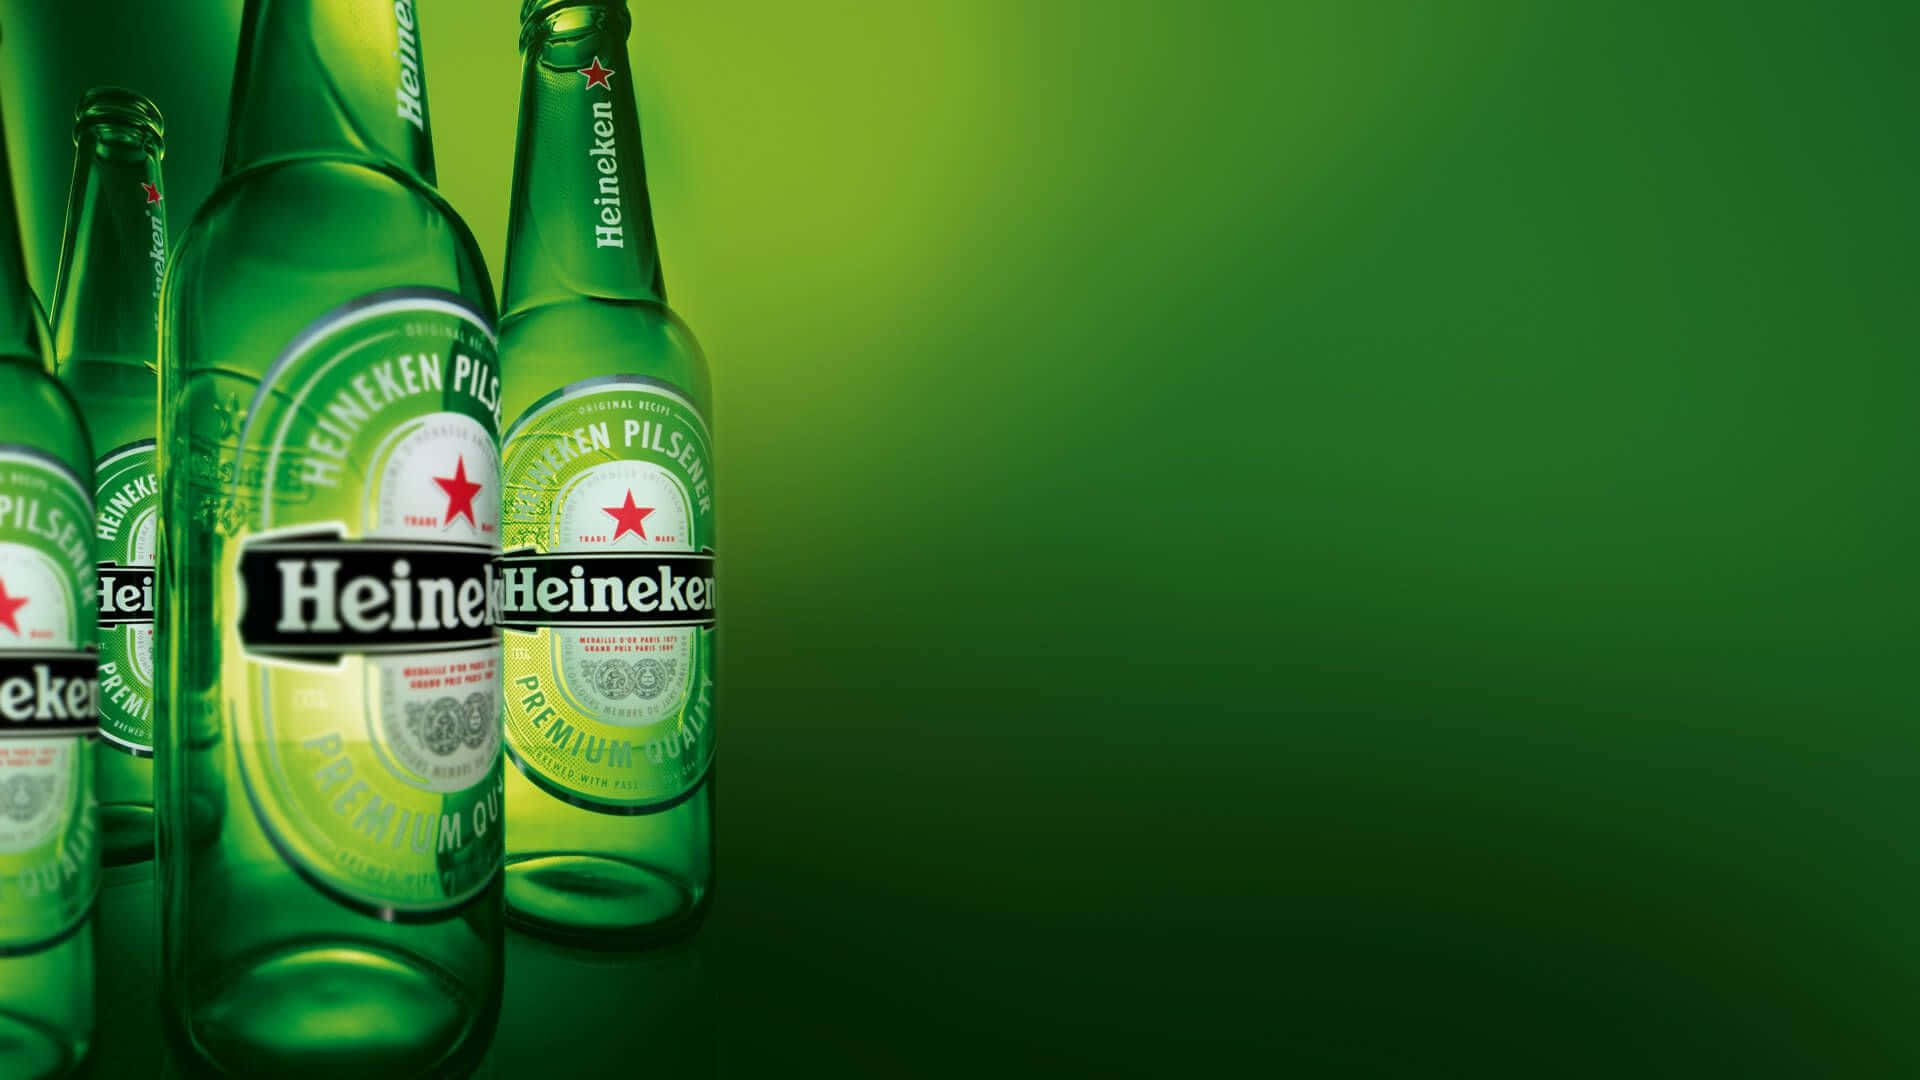 Heineken1920 X 1080 Bakgrund